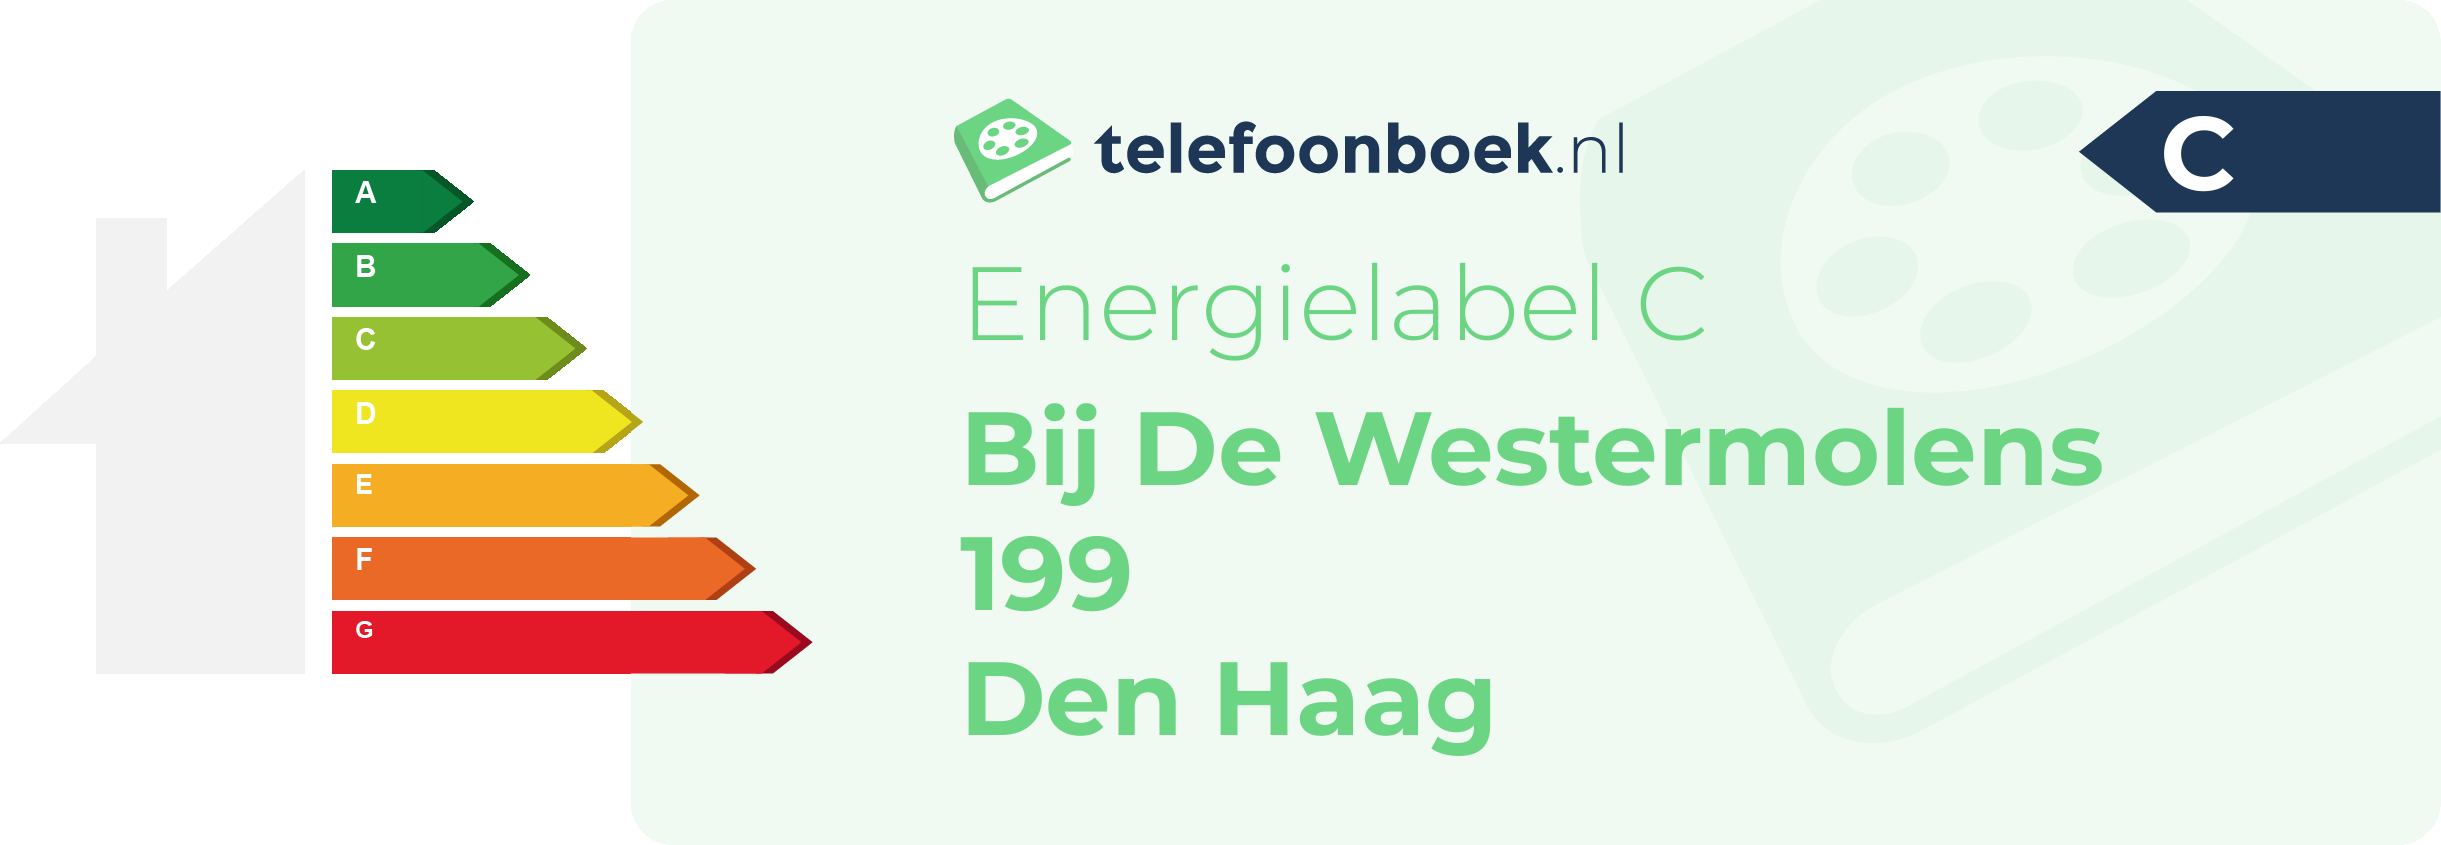 Energielabel Bij De Westermolens 199 Den Haag